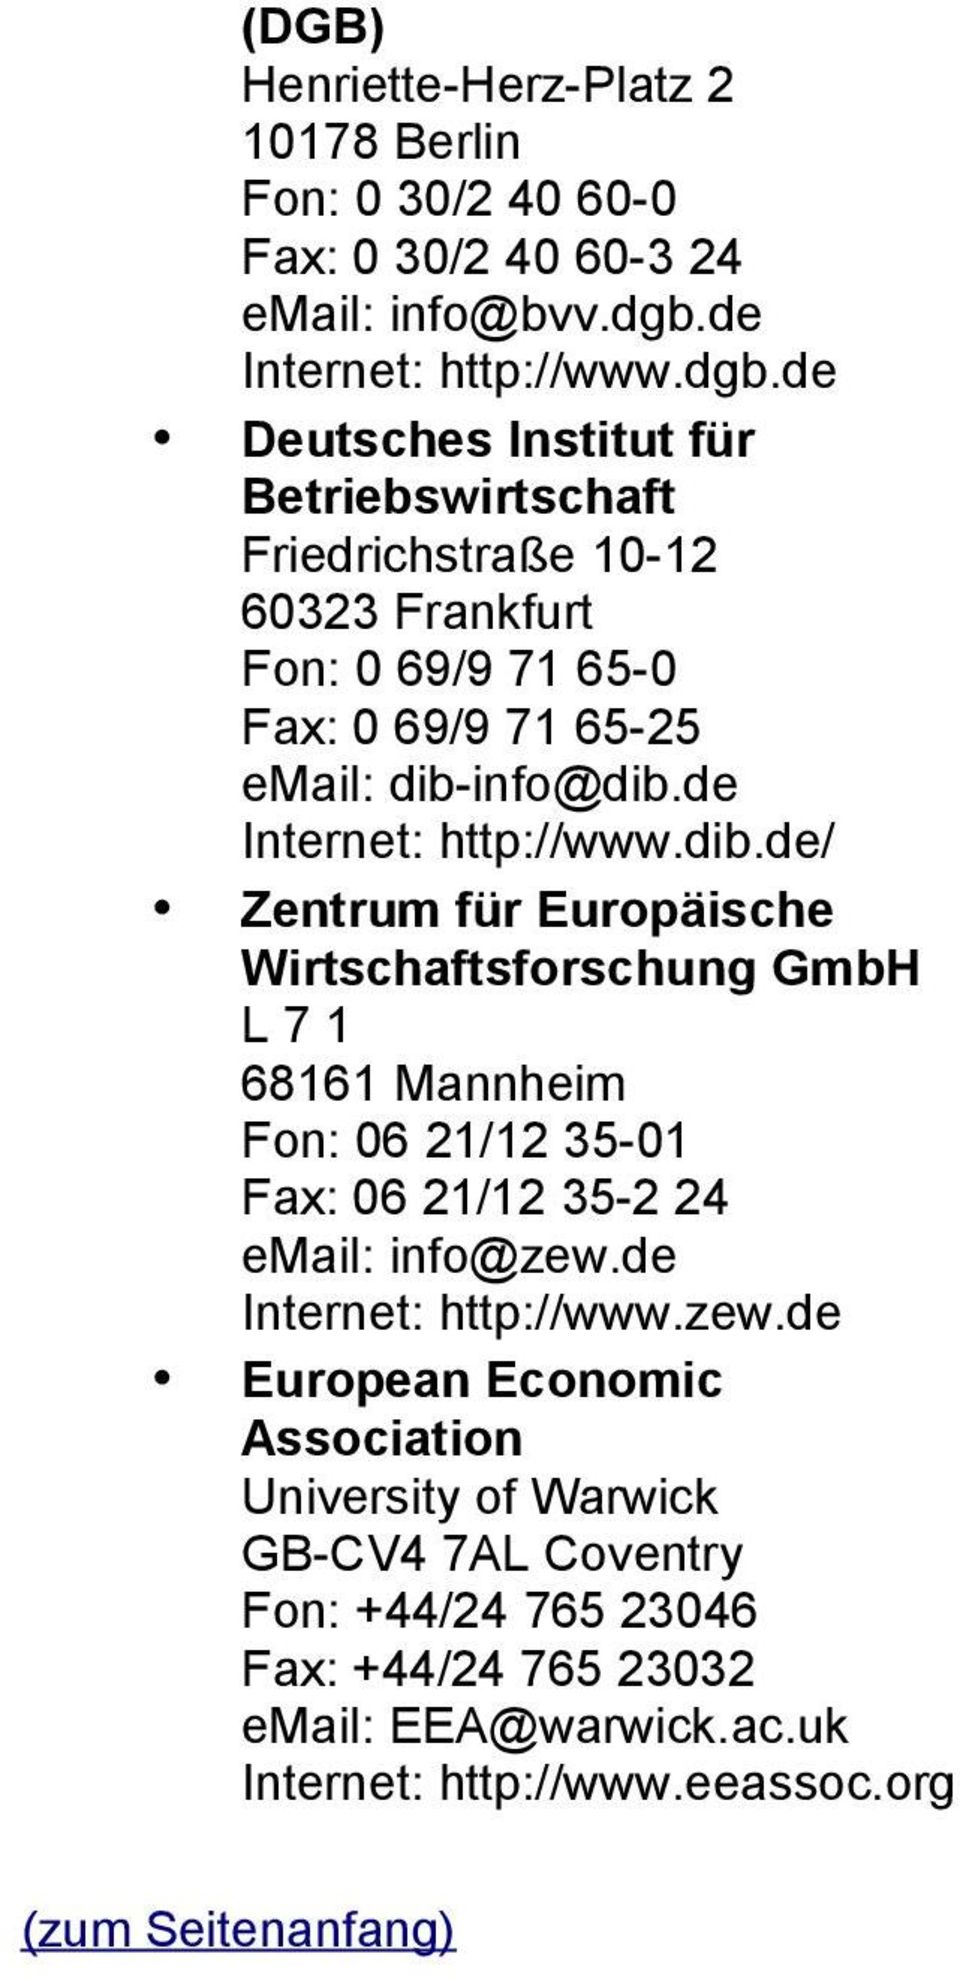 de Deutsches Institut für Betriebswirtschaft Friedrichstraße 10-12 60323 Frankfurt Fon: 0 69/9 71 65-0 Fax: 0 69/9 71 65-25 email: dib-info@dib.